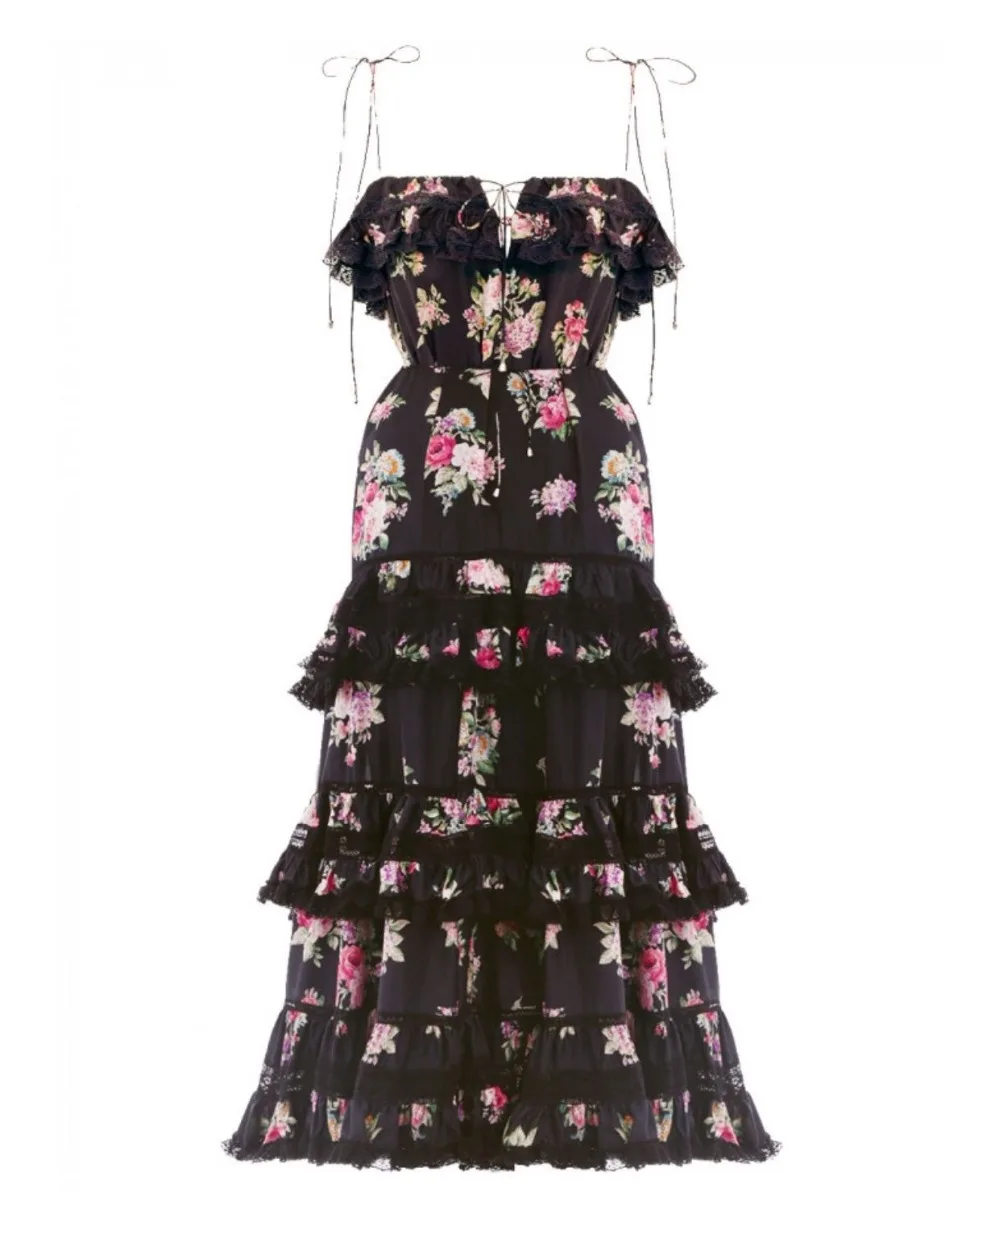 COLOREE высокое качество подиумное дизайнерское платье летнее черное цветочное печатное Каскадное кружево платье пляжное длинное платье для отдыха